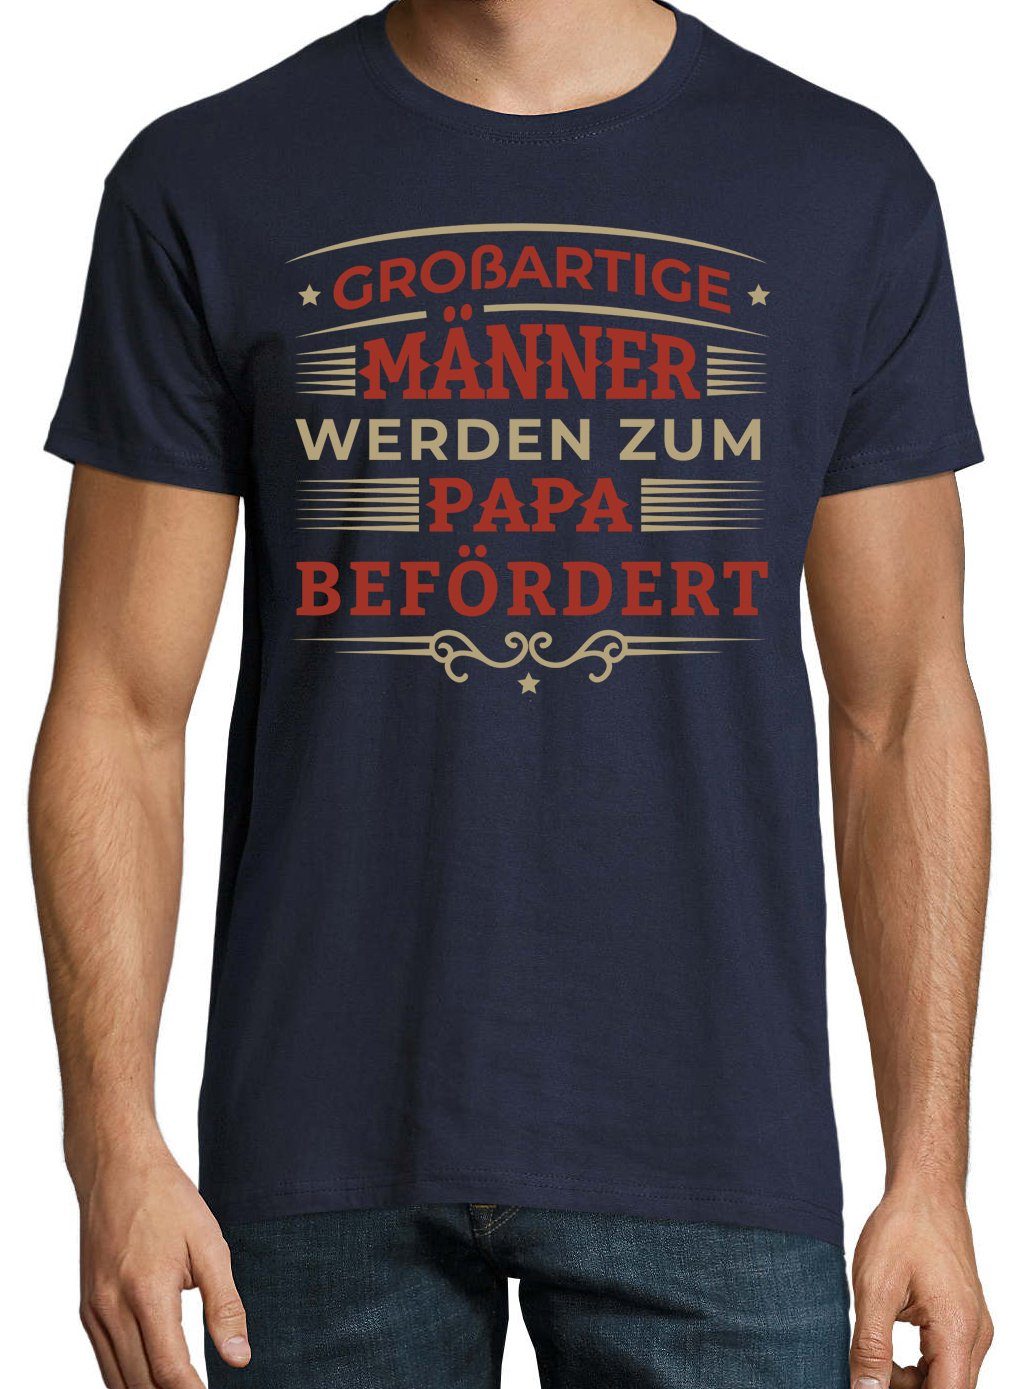 "Männer Papa Youth Befördert" mit T-Shirt trendigem Zum Werden Frontprint Navyblau Shirt Herren Designz